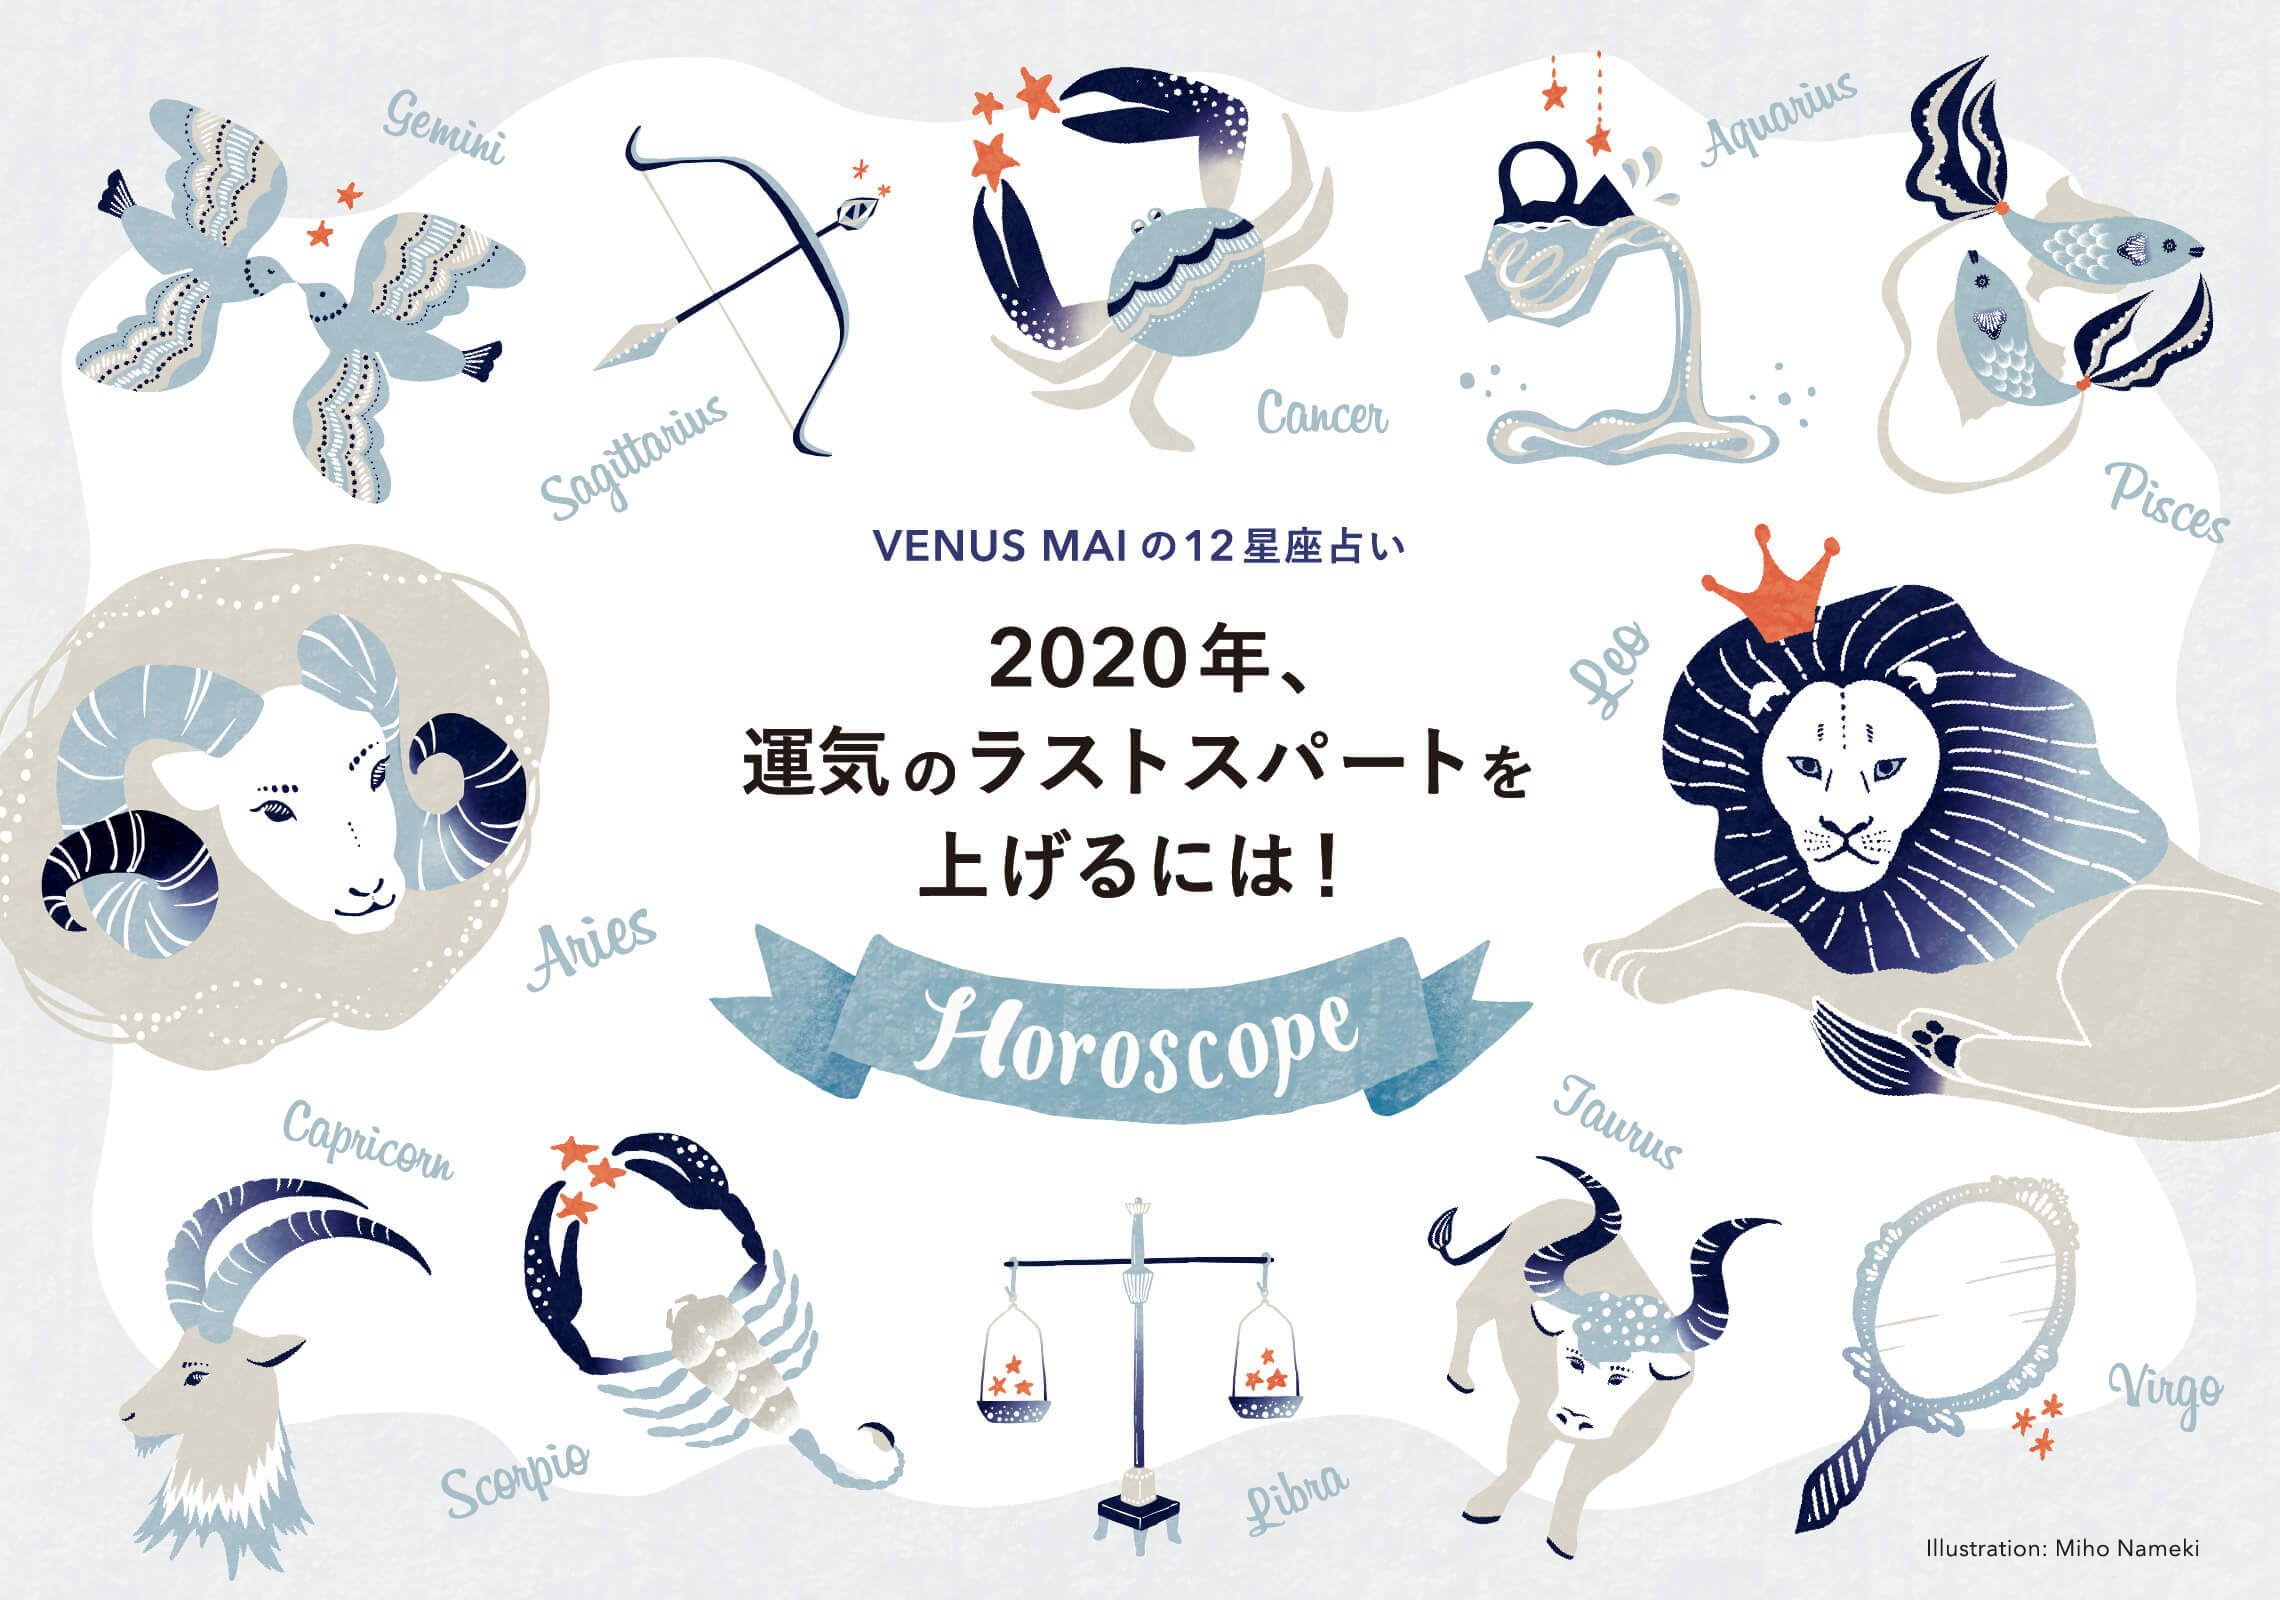 Topkapi Journal 12星座占いイラスト 09 Miho Nameki Illustration Design